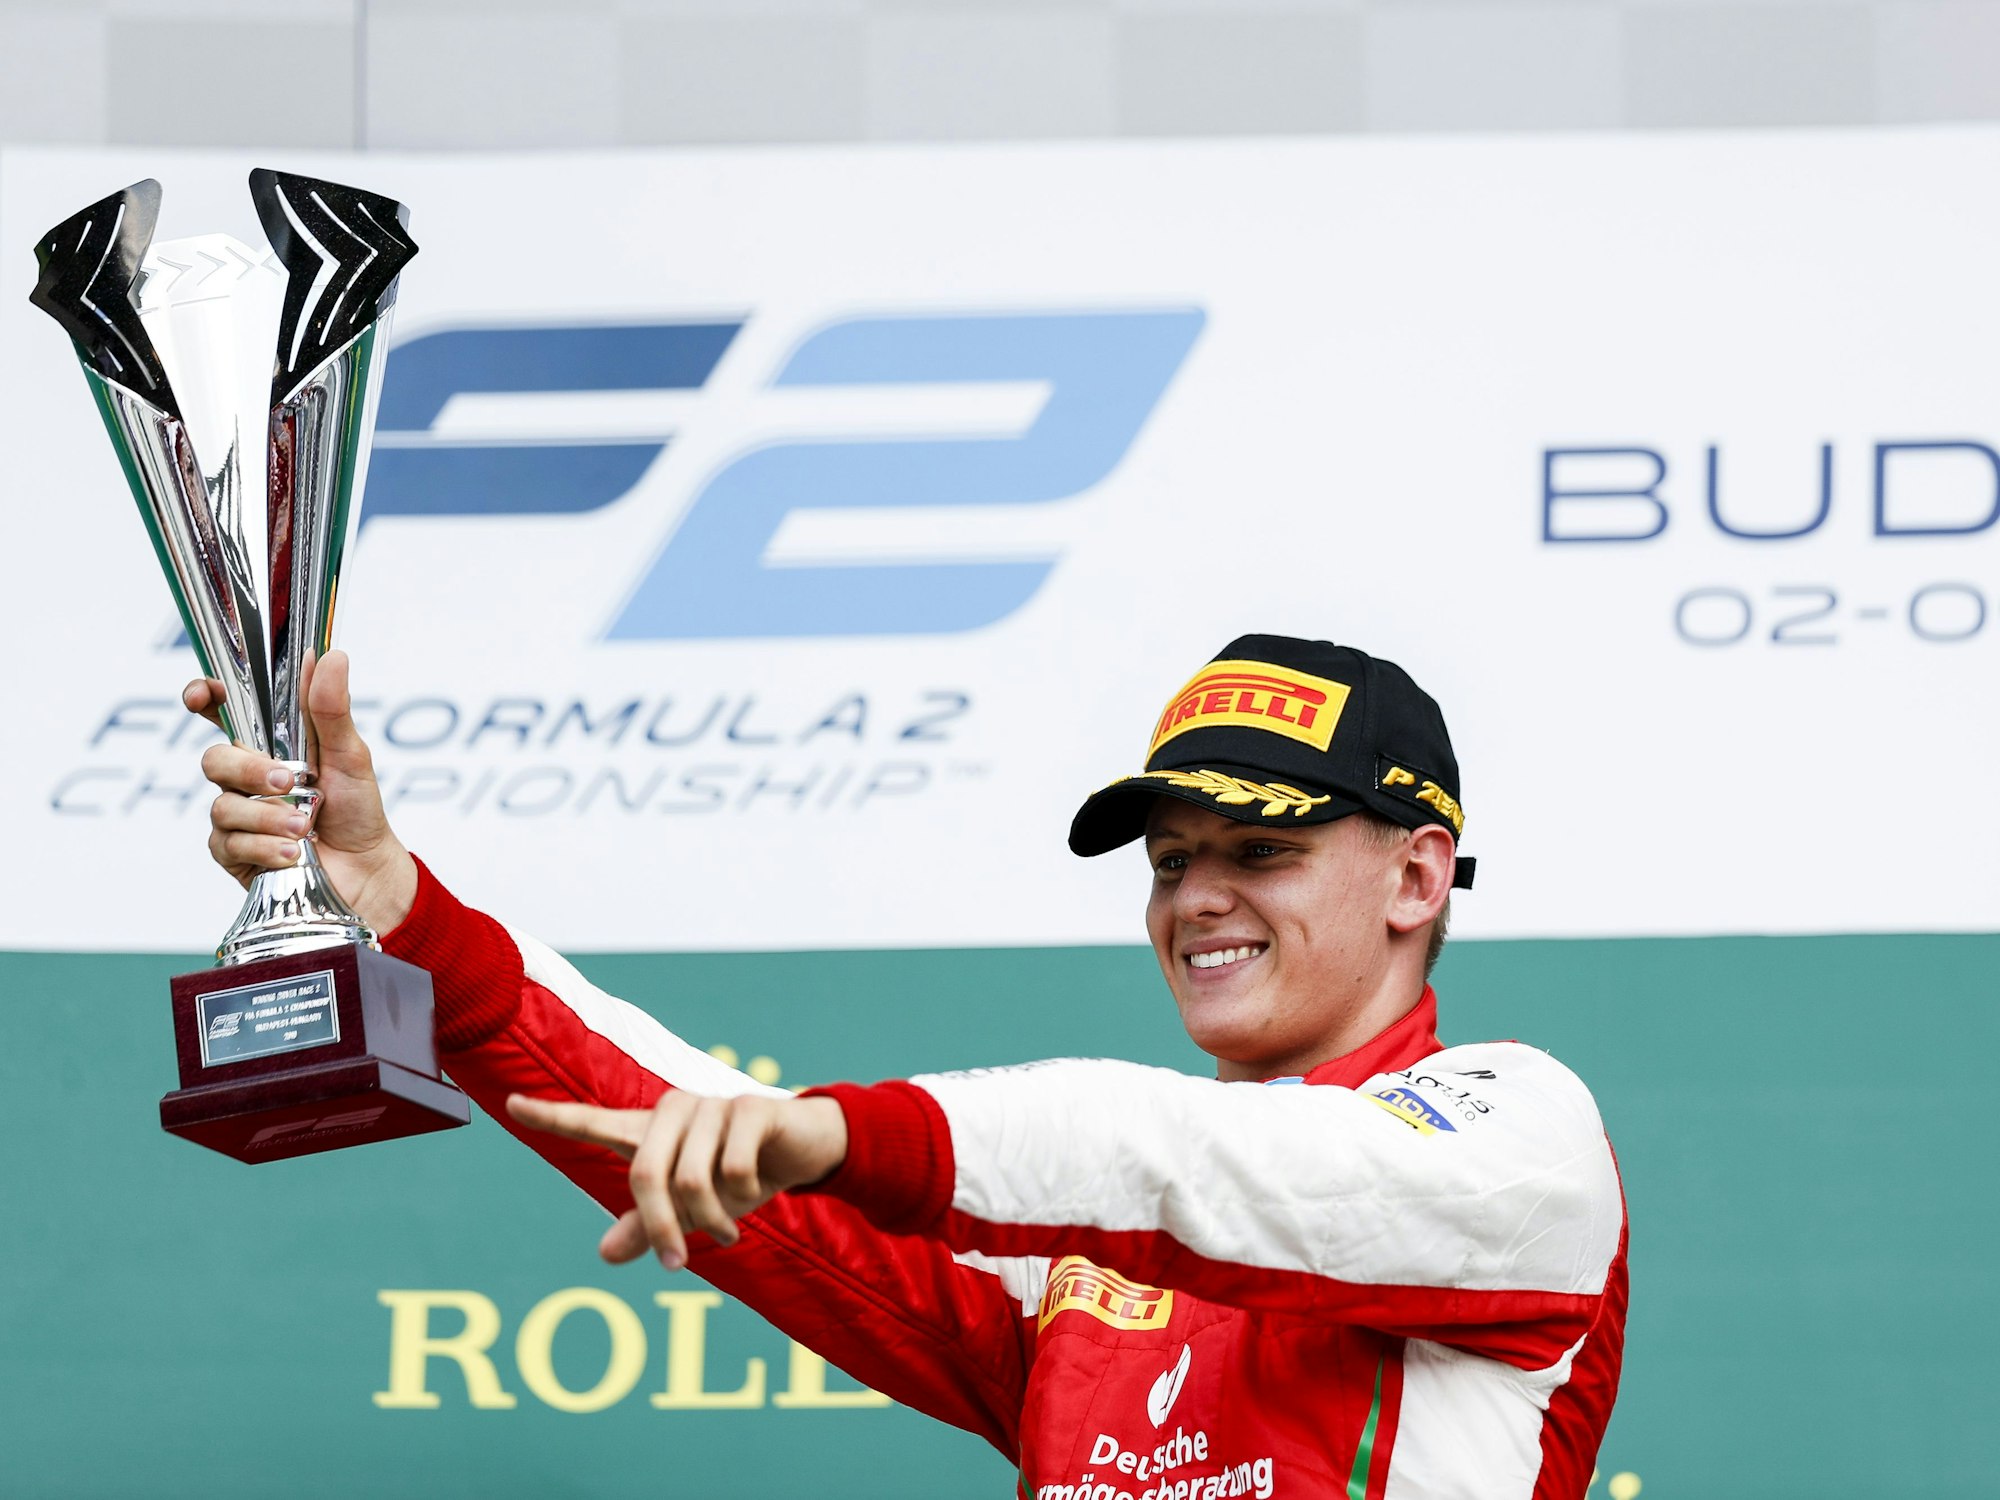 Mick Schumacher von Prema Racing jubelt auf dem Podium nach seinem Sieg im Sprintrennen bei der FIA Formel-2-Meisterschaft 2019 auf dem Hungaroring. 